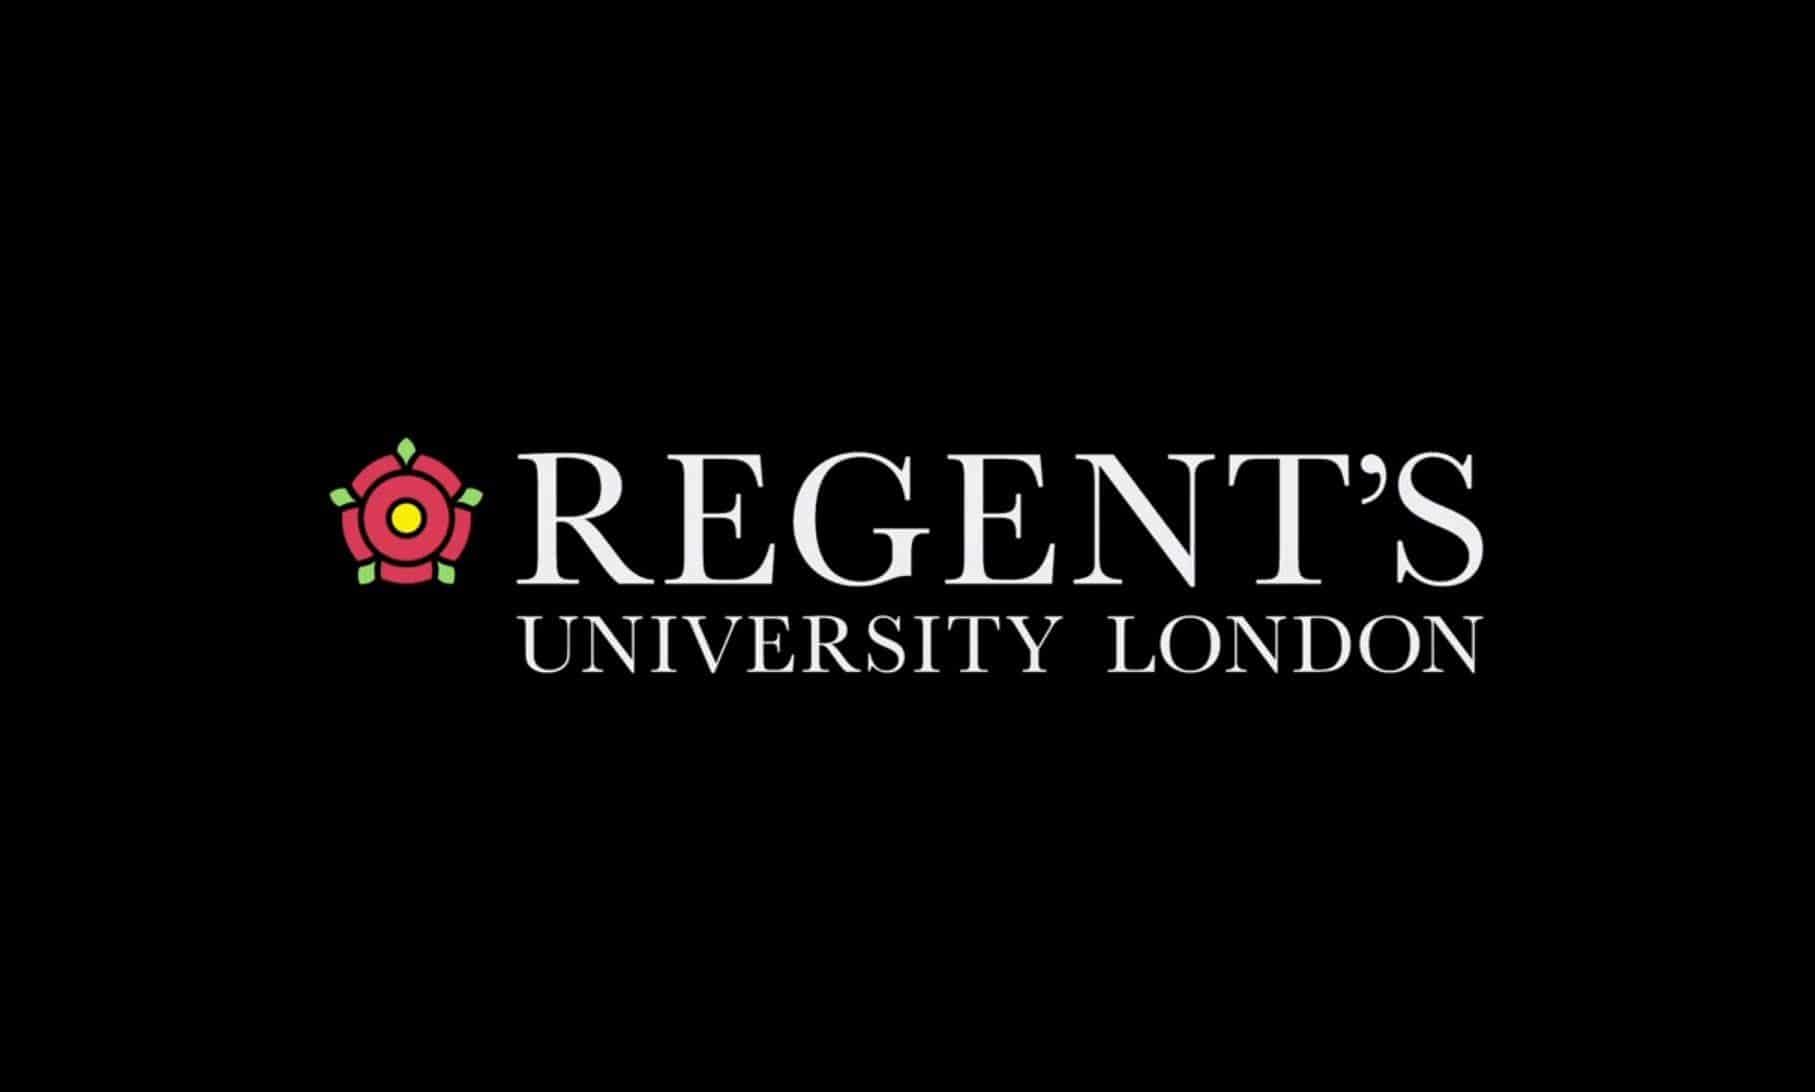 منحة جامعة ريجنت لندن للحصول على البكالوريوس من المملكة المتحدة 2020-21